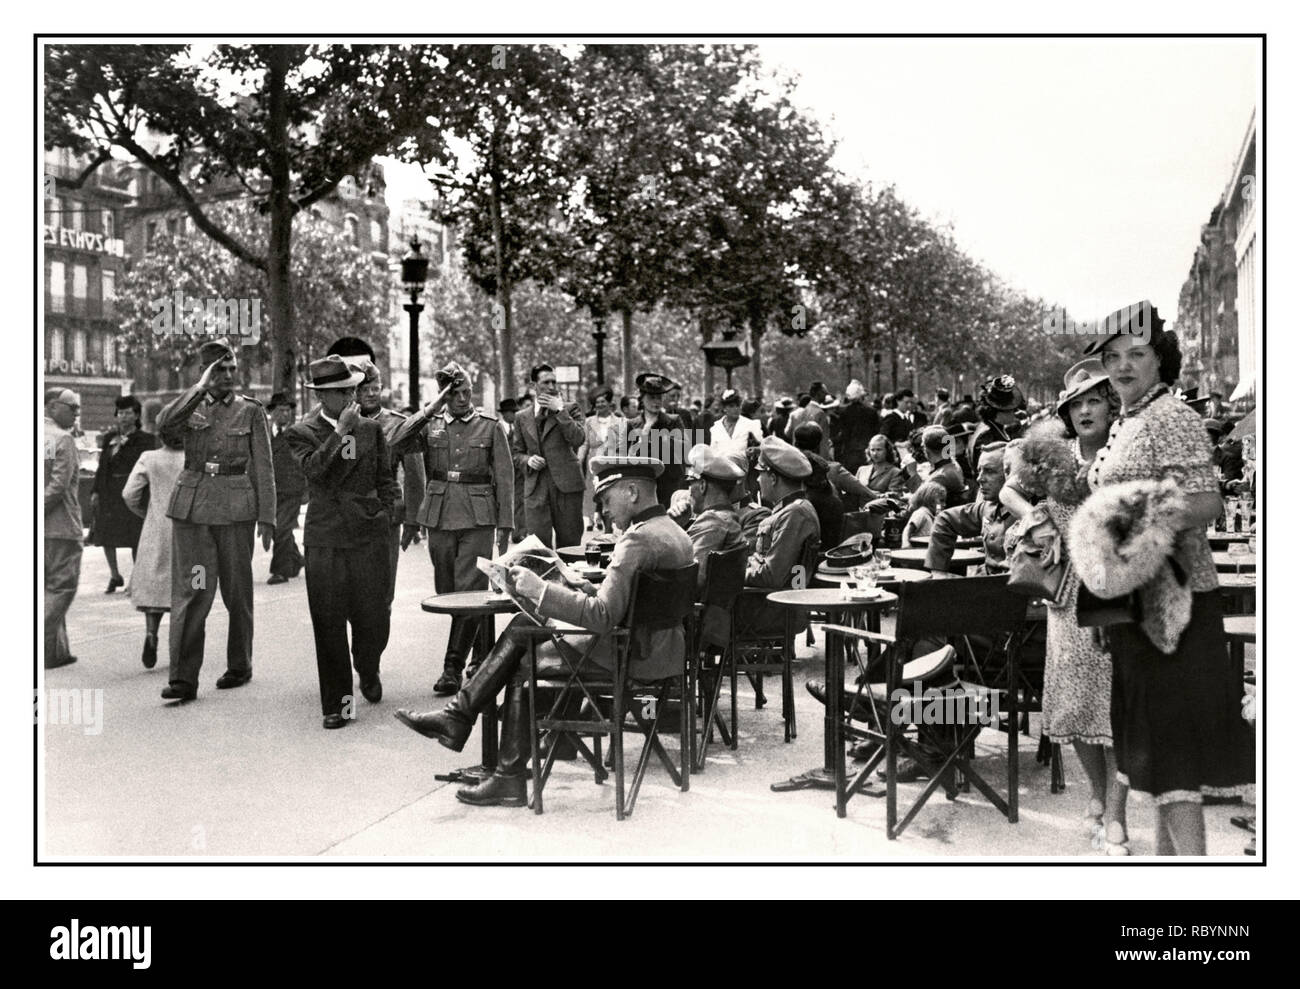 1940 PARISER CAFÉ NAZI-DEUTSCHLAND-BESETZUNG BOULEVARD FRANKREICH Deutsche Offiziere der Nazi-Wehrmacht sitzen in einem Boulevard-Café auf einer Straße im Zentrum von Paris, vorbei an deutschen Soldaten grüßen die sitzenden Offiziere mit Pariser, die ihre täglichen Geschäfte machen. Paris, Frankreich Juli 1940 Stockfoto